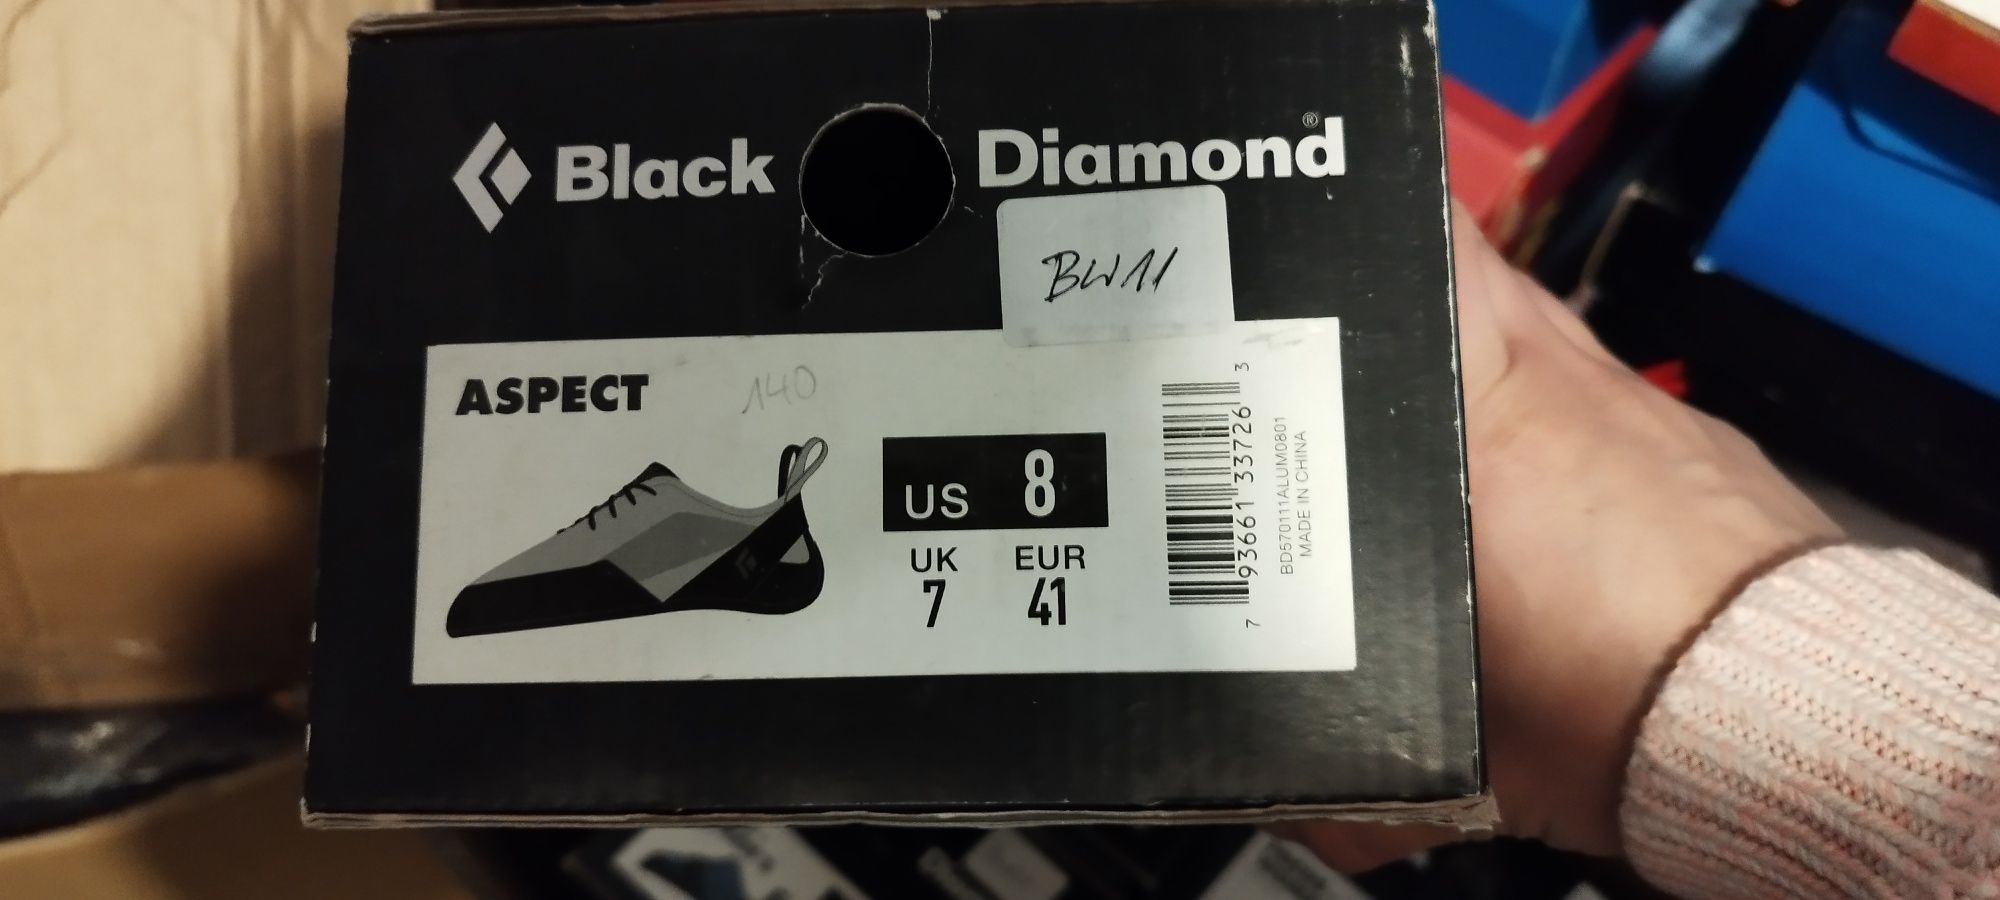 Nowe buty wspinaczkowe Black Diamond Aspect rozmiar 41